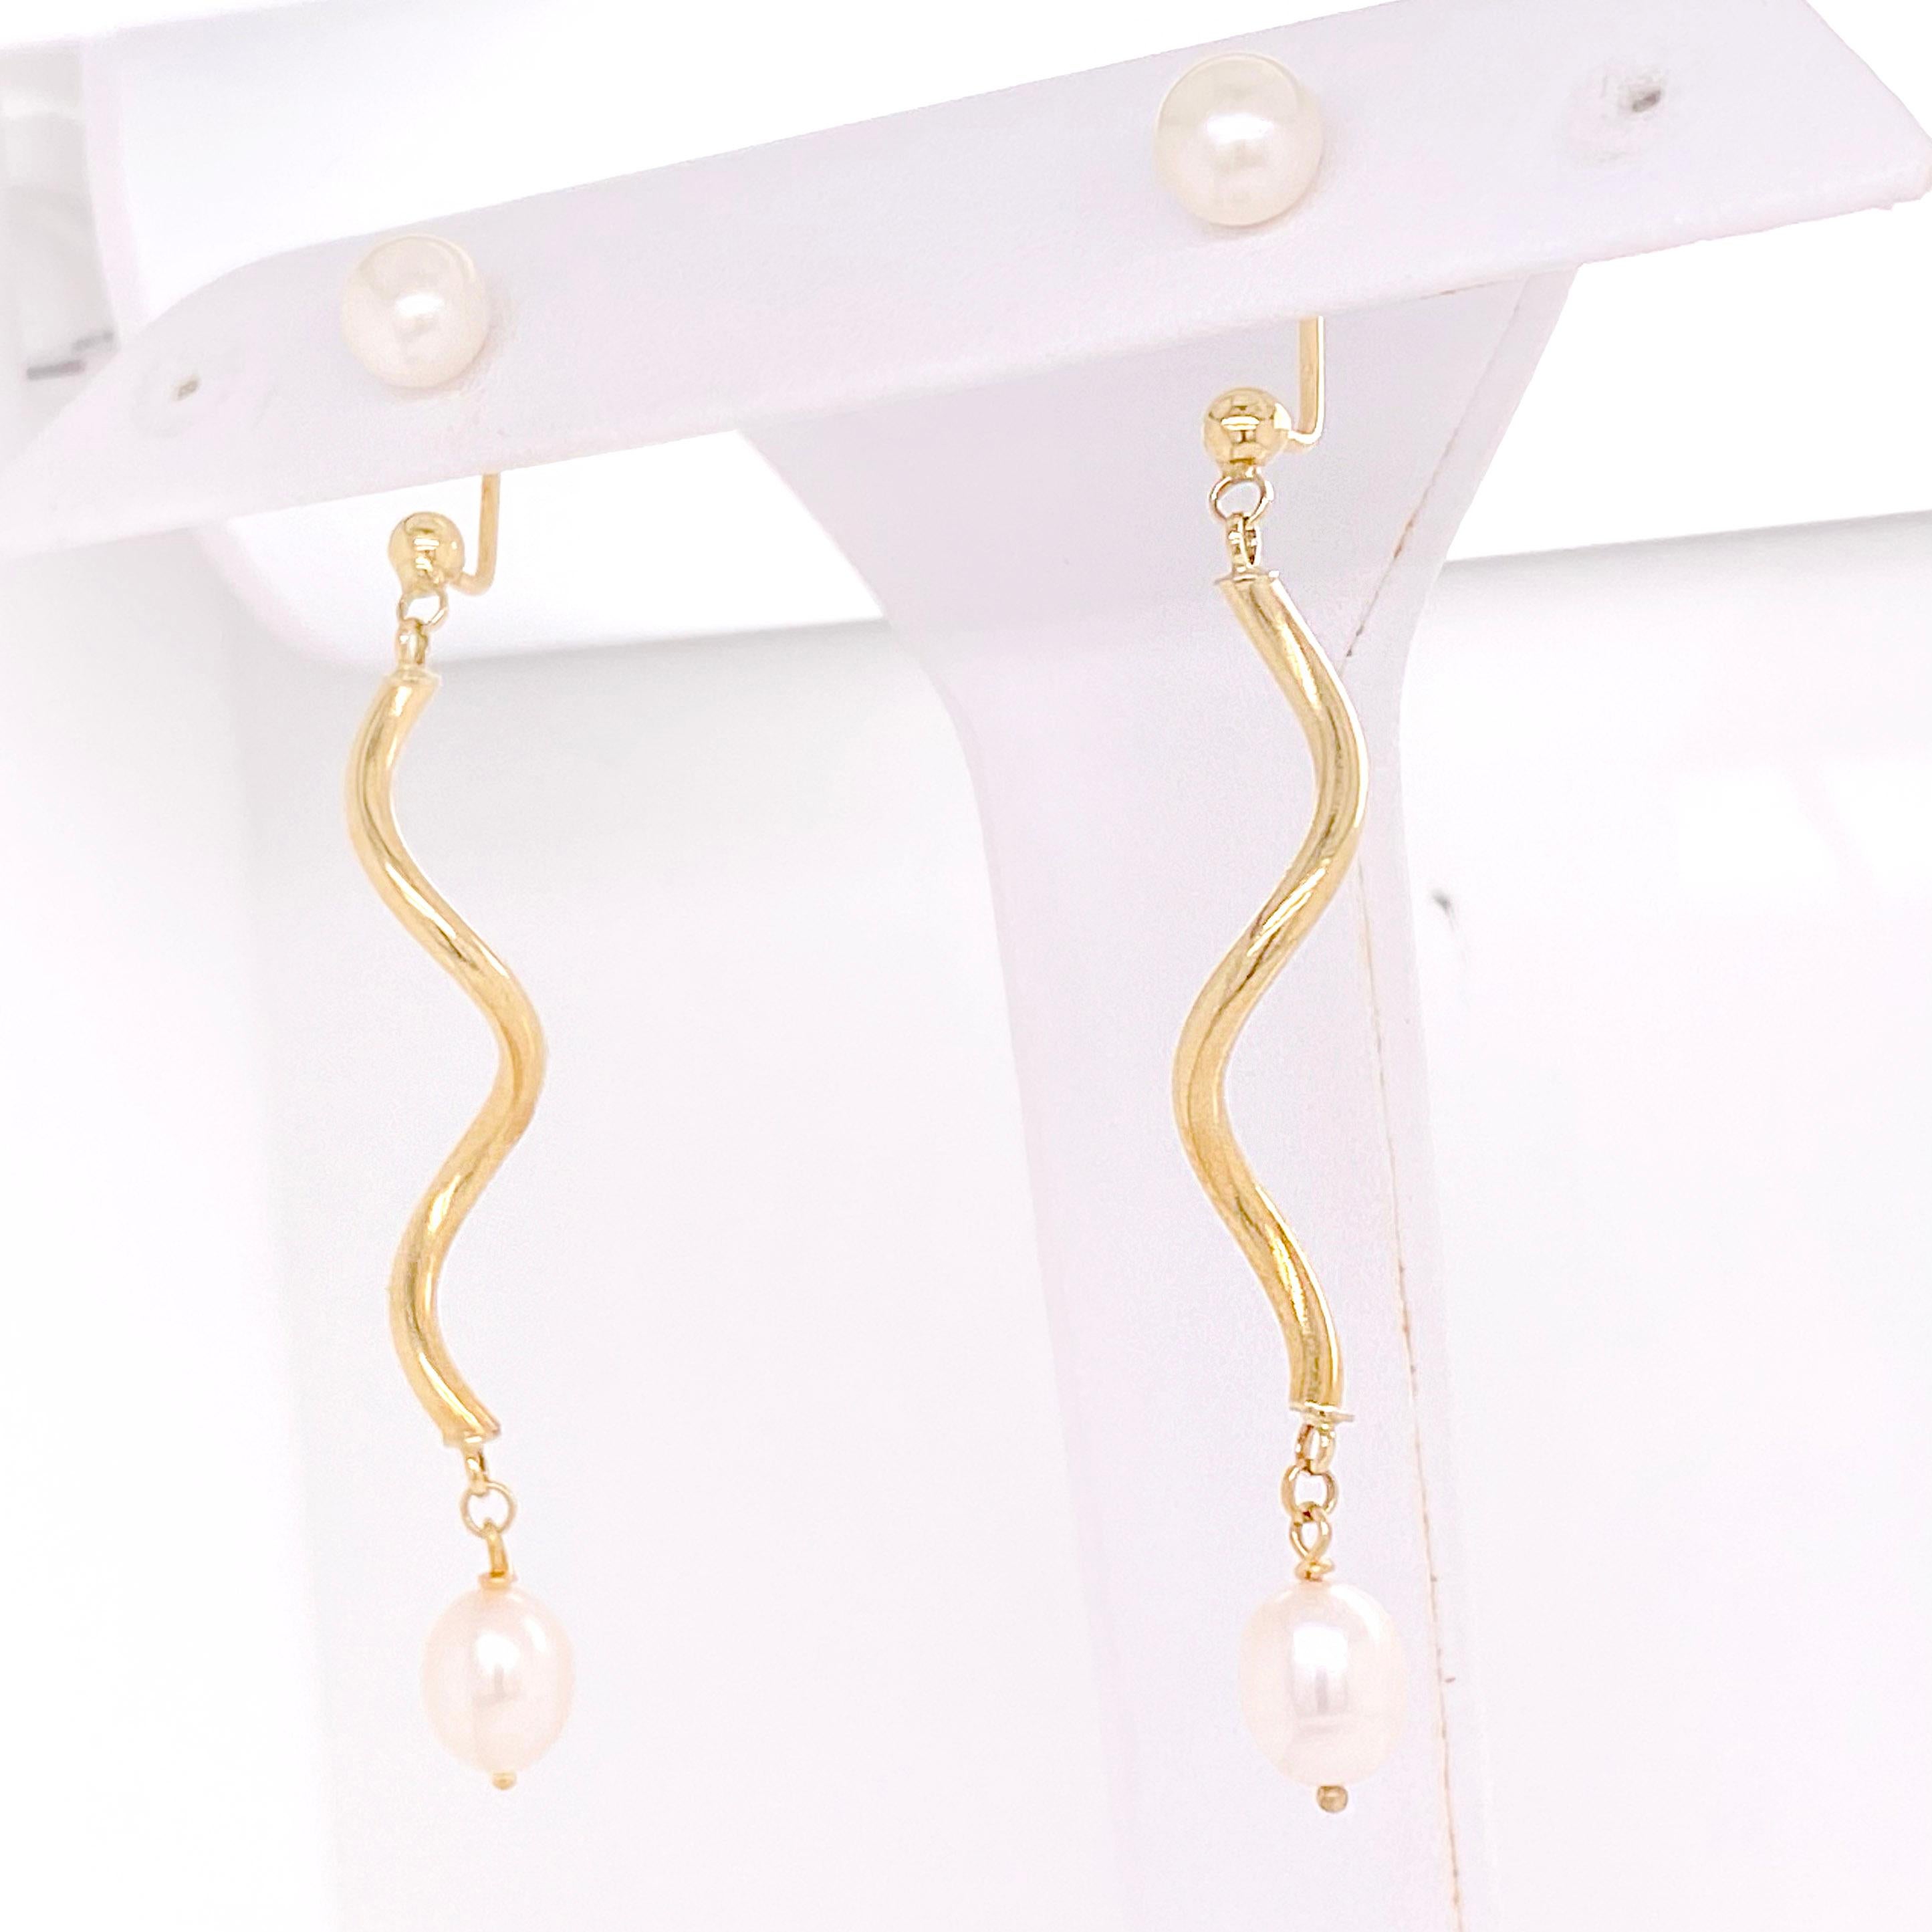 Ces longues boucles d'oreilles pendantes sont ornées d'un clou de perles de 7 mm de diamètre et d'un pendant tourbillonnant en or poli. La partie inférieure est ornée d'une belle perle blanche qui pend de l'or. Ces détails de ces magnifiques boucles